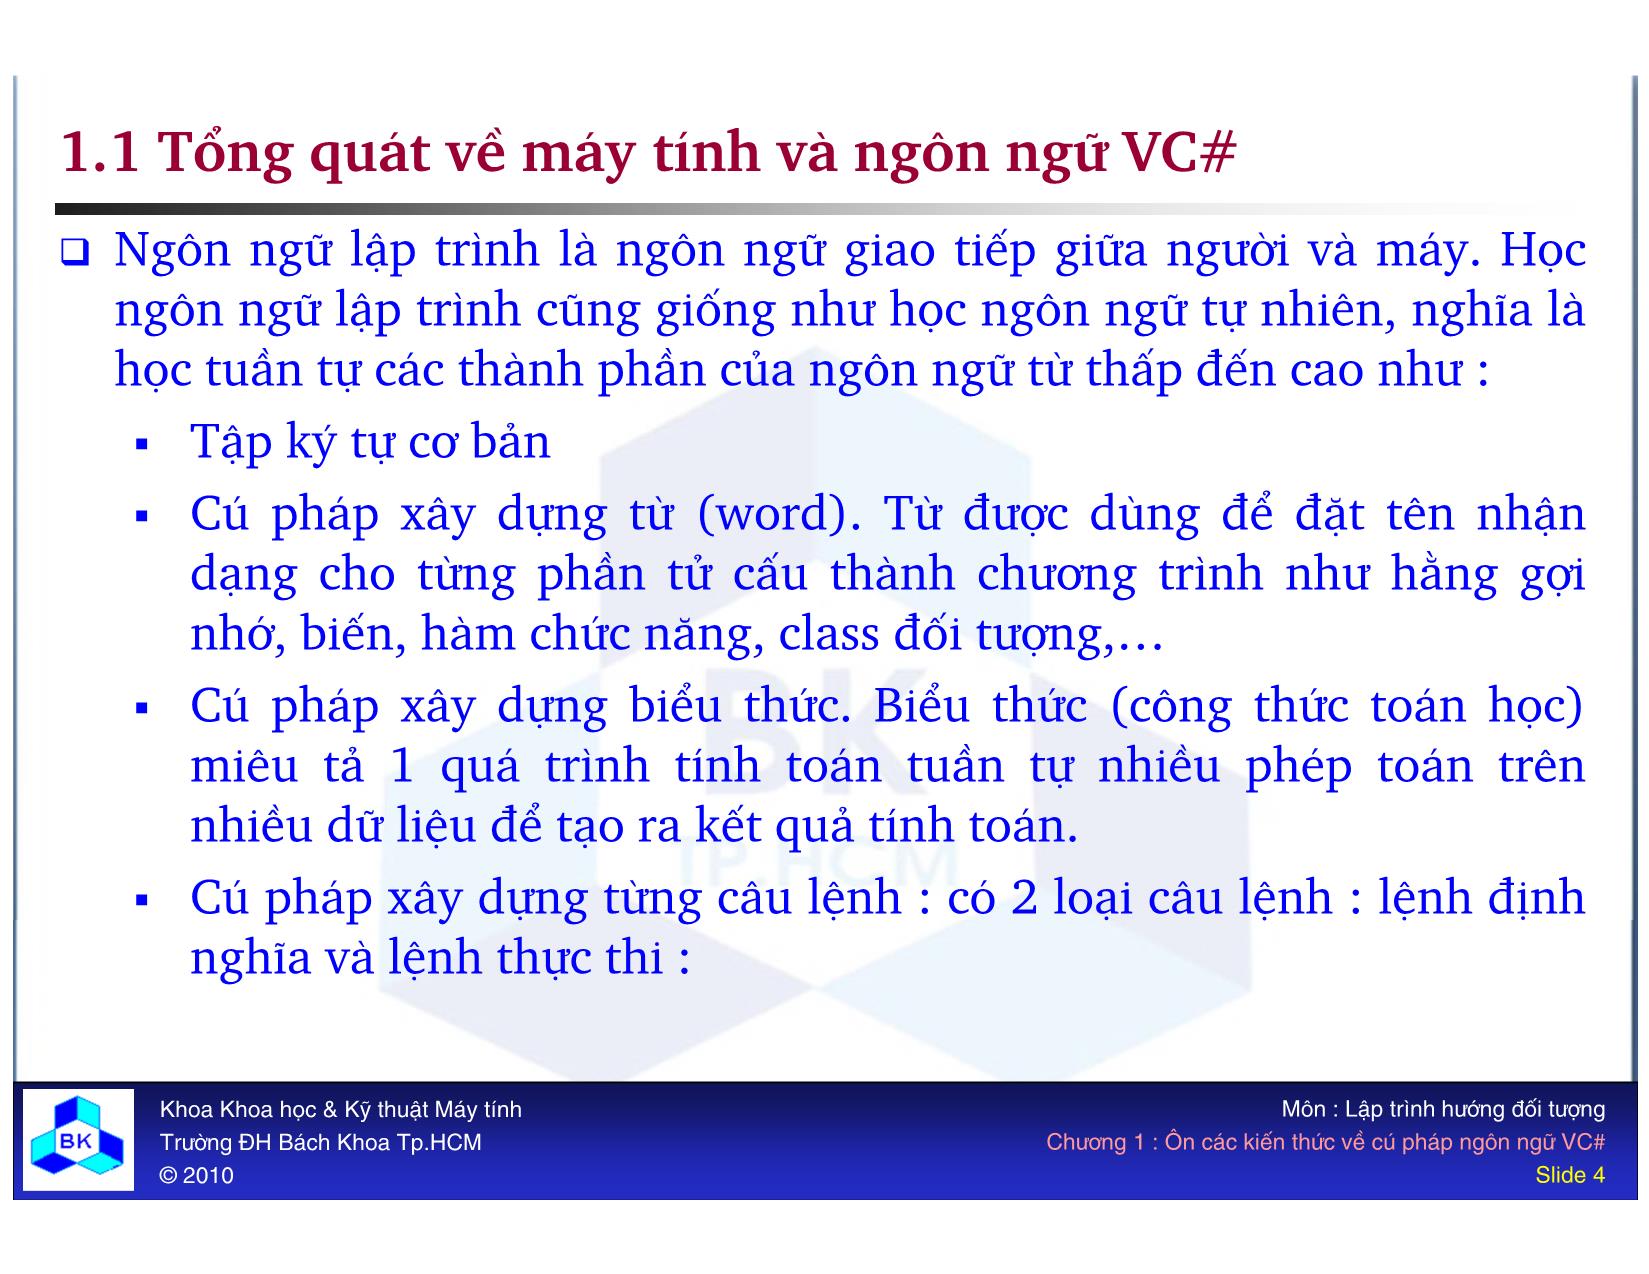 Bài giảng Lập trình hướng đối tượng - Chương 1: Ôn các kiến thức về cú pháp ngôn ngữ VC# trang 4